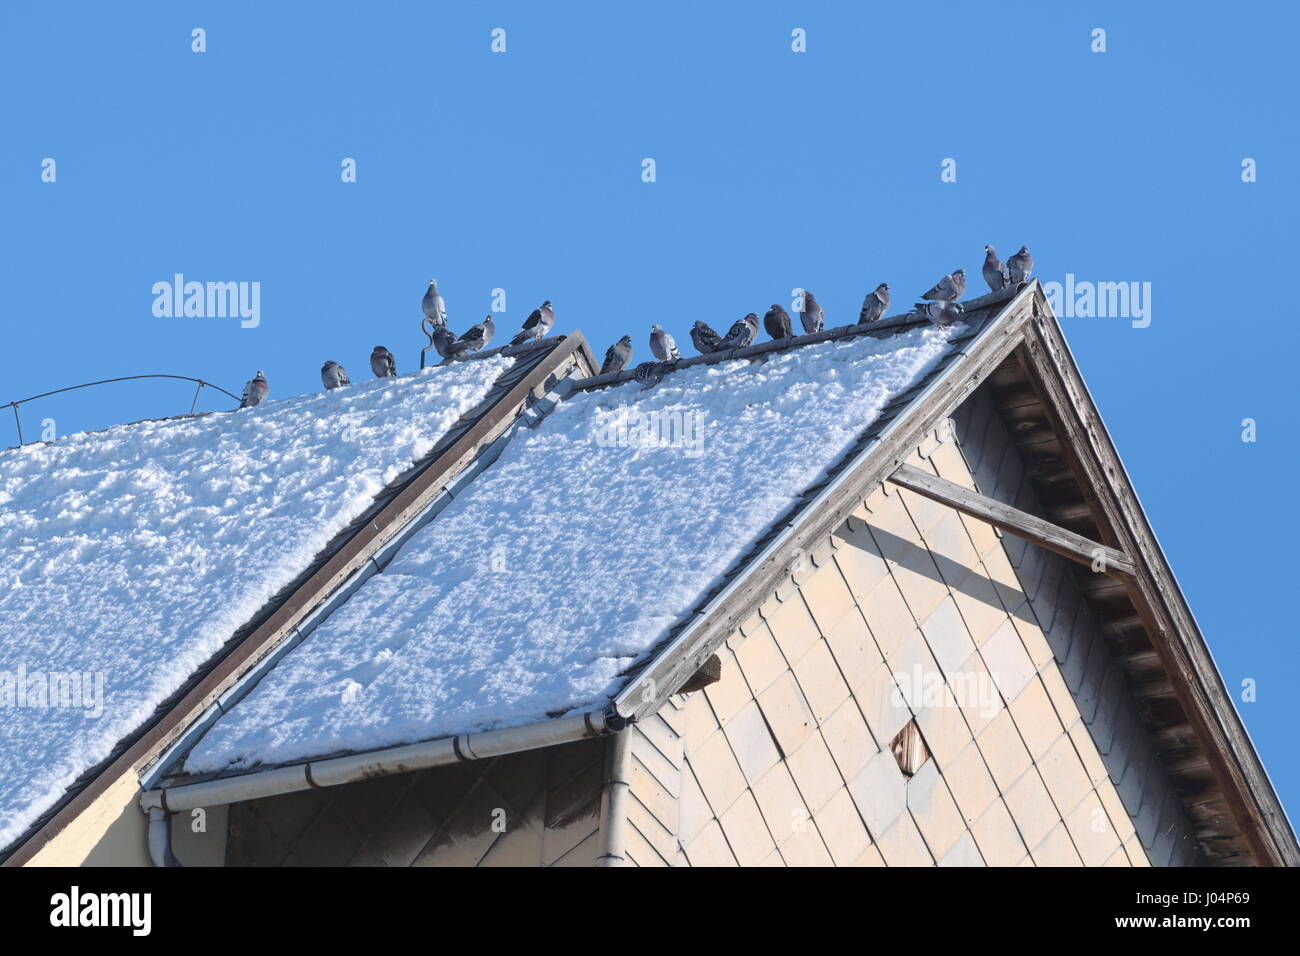 Grauen Tauben sitzen auf verschneiten Dach an einem sonnigen Wintertag Stockfoto